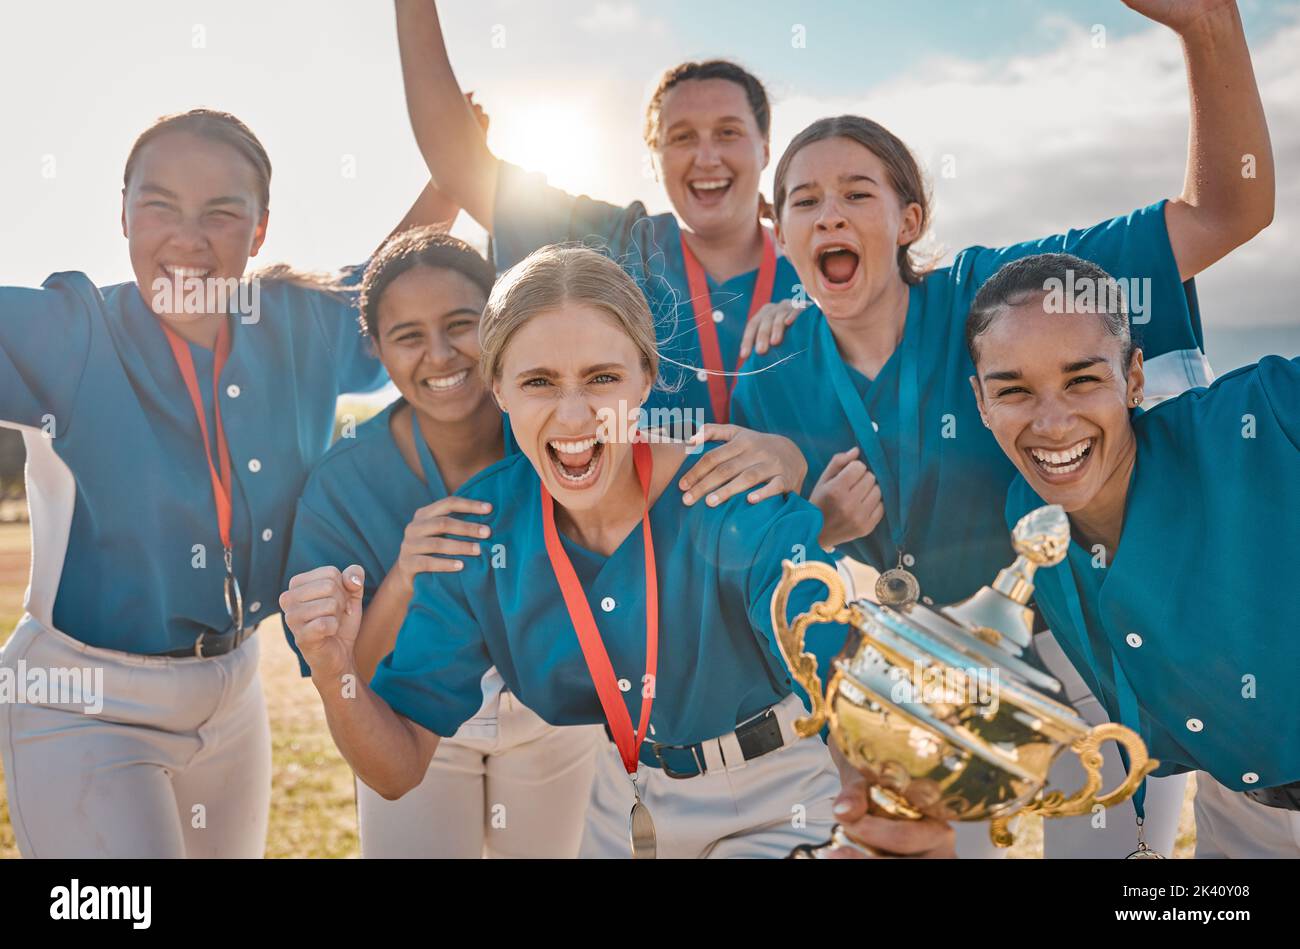 Retrato del equipo de béisbol femenino, celebración ganadora del trofeo y éxito deportivo, campeona y logro de competición. Jugadoras felices de softbol Foto de stock